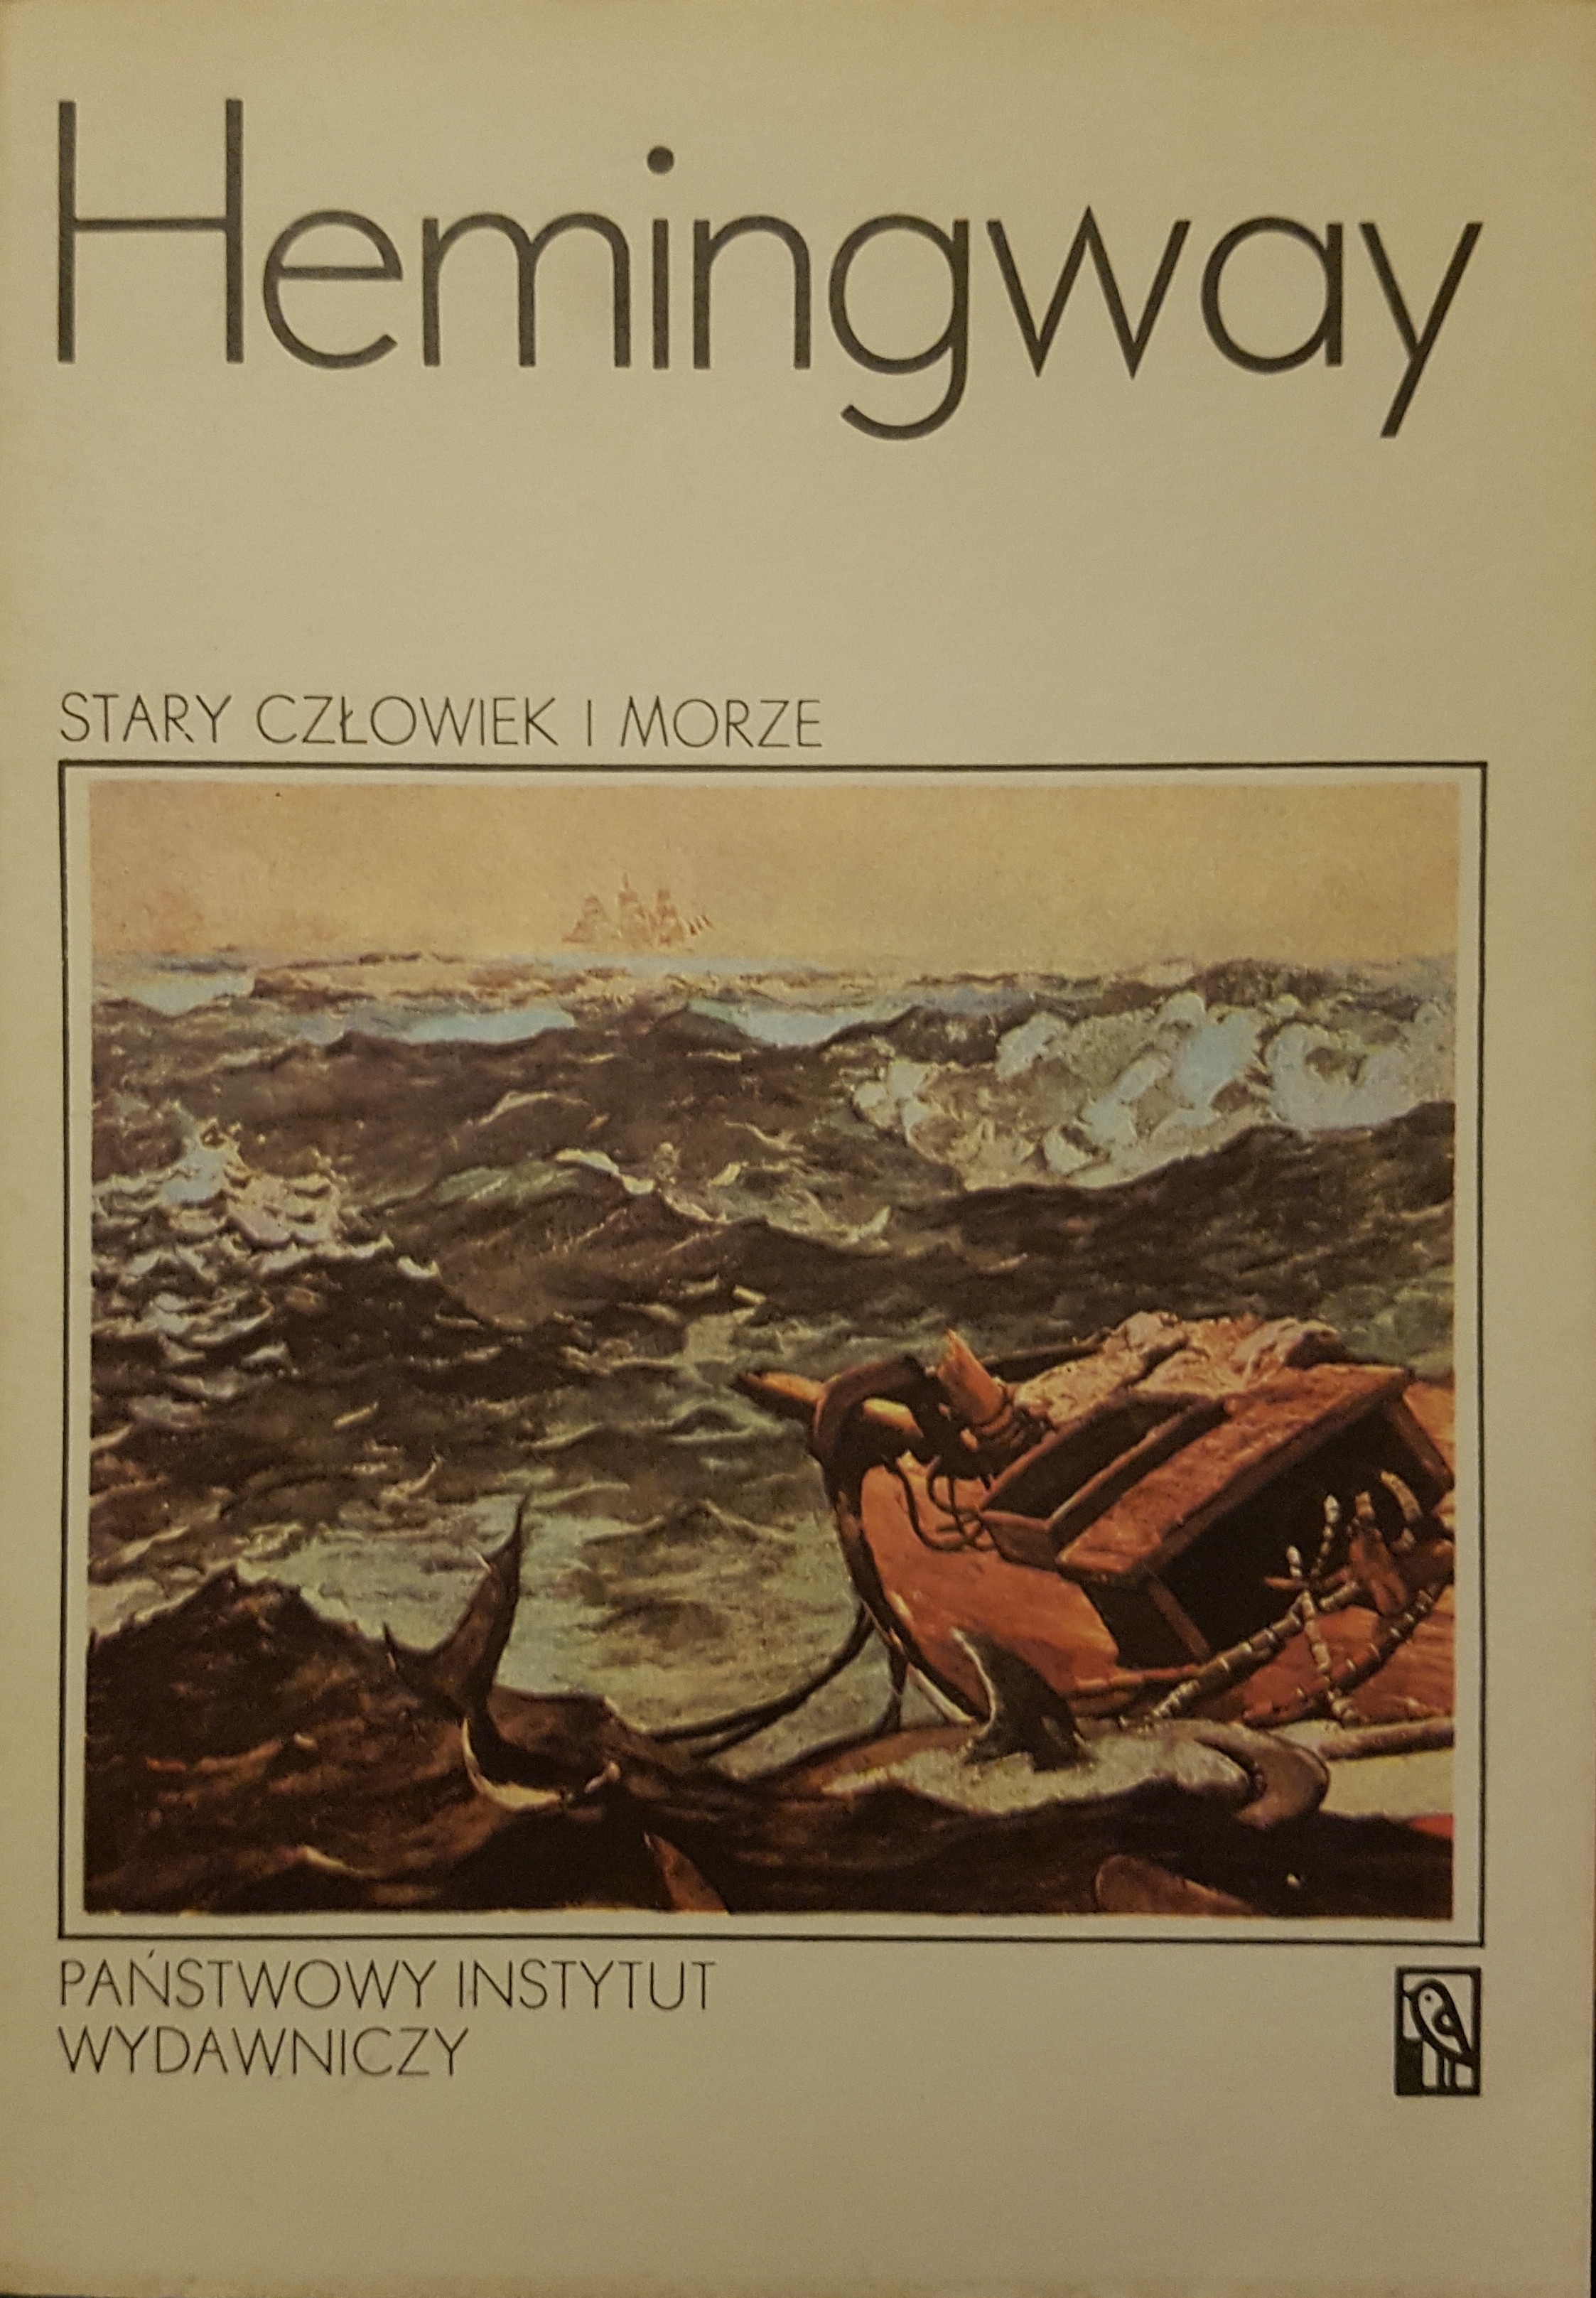 Marlin Stary Człowiek I Morze Stary człowiek i morze - Ernest Hemingway - książka, recenzja, streszczenie